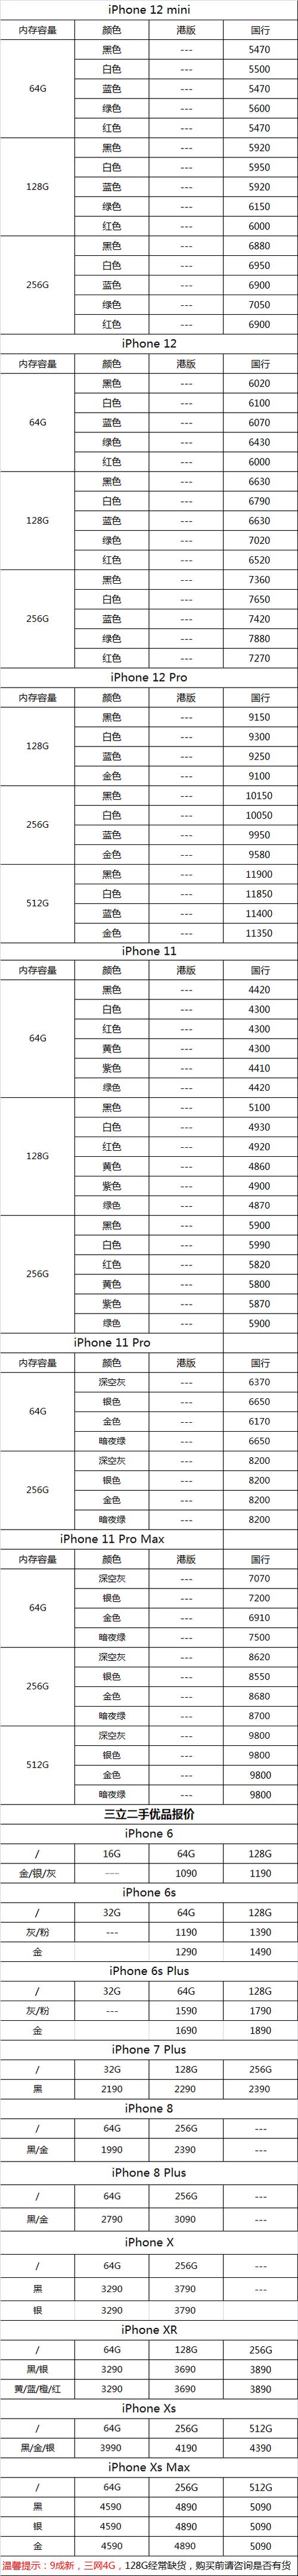 今日报价iphone12mini12pro及二手苹果手机11月13日报价